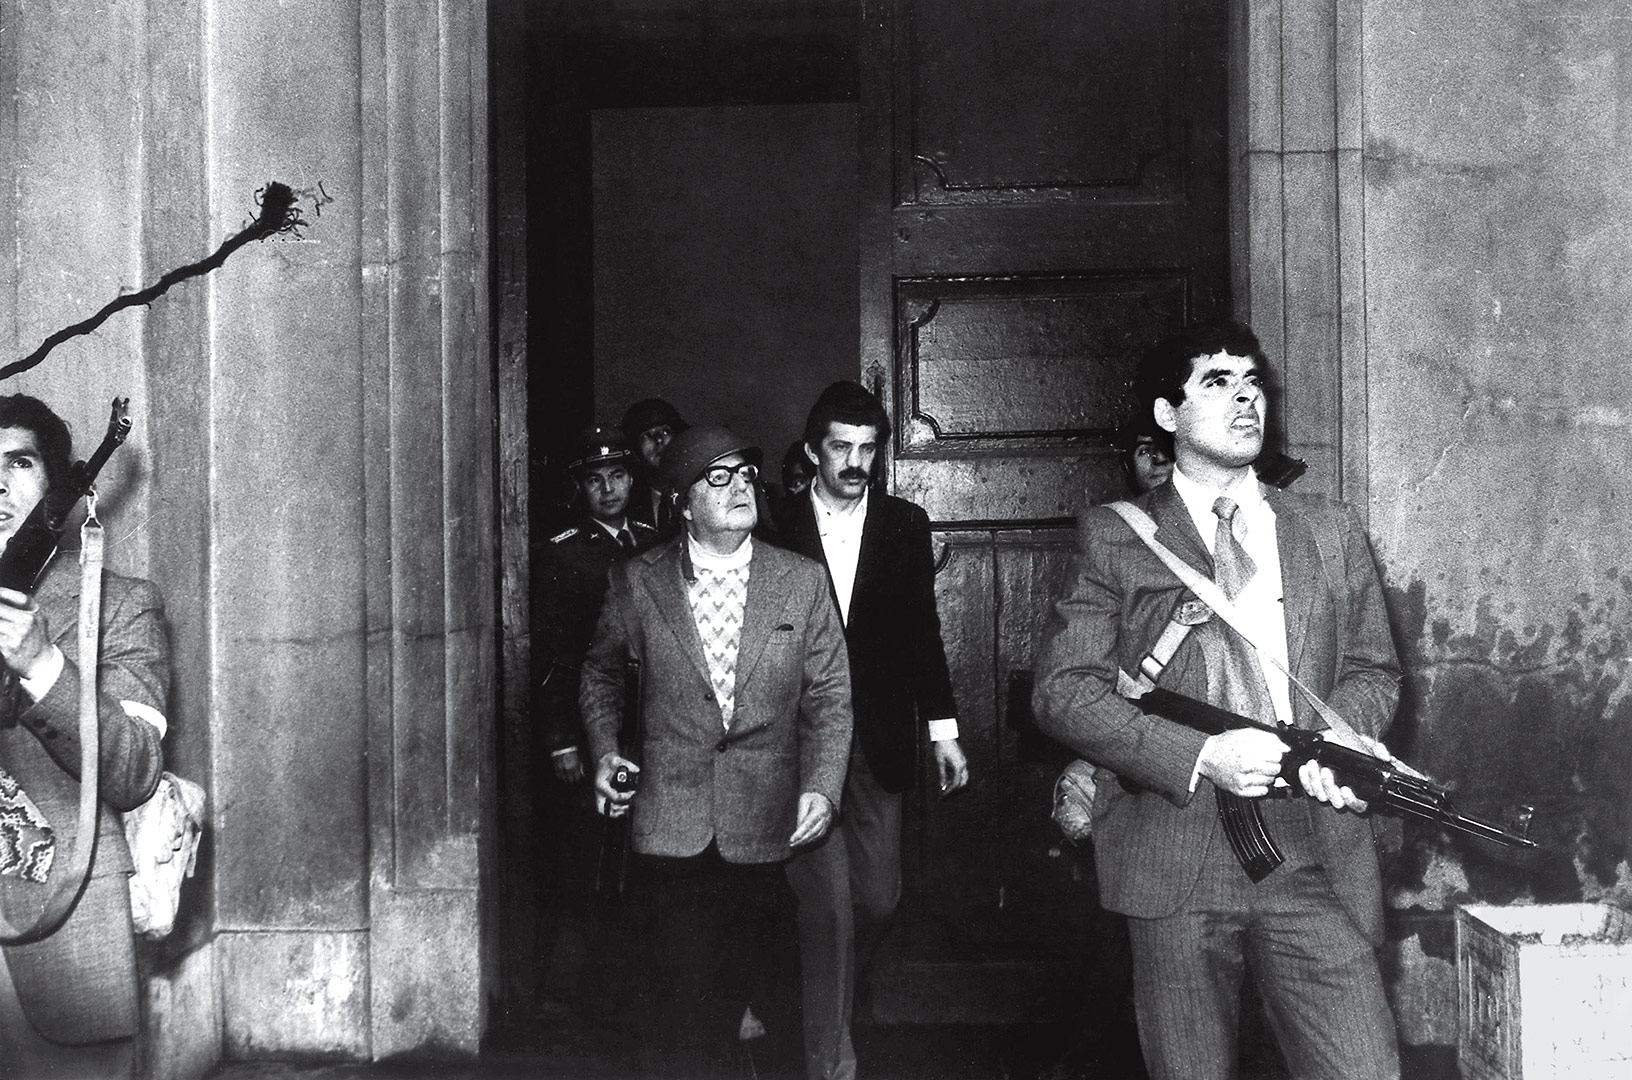 Αλιέντε, Χιλή 11 Σεπτεμβρίου 1973: 45 χρόνια από το πραξικόπημα του Πινοσέτ | ενότητες, κόσμος | Real.gr